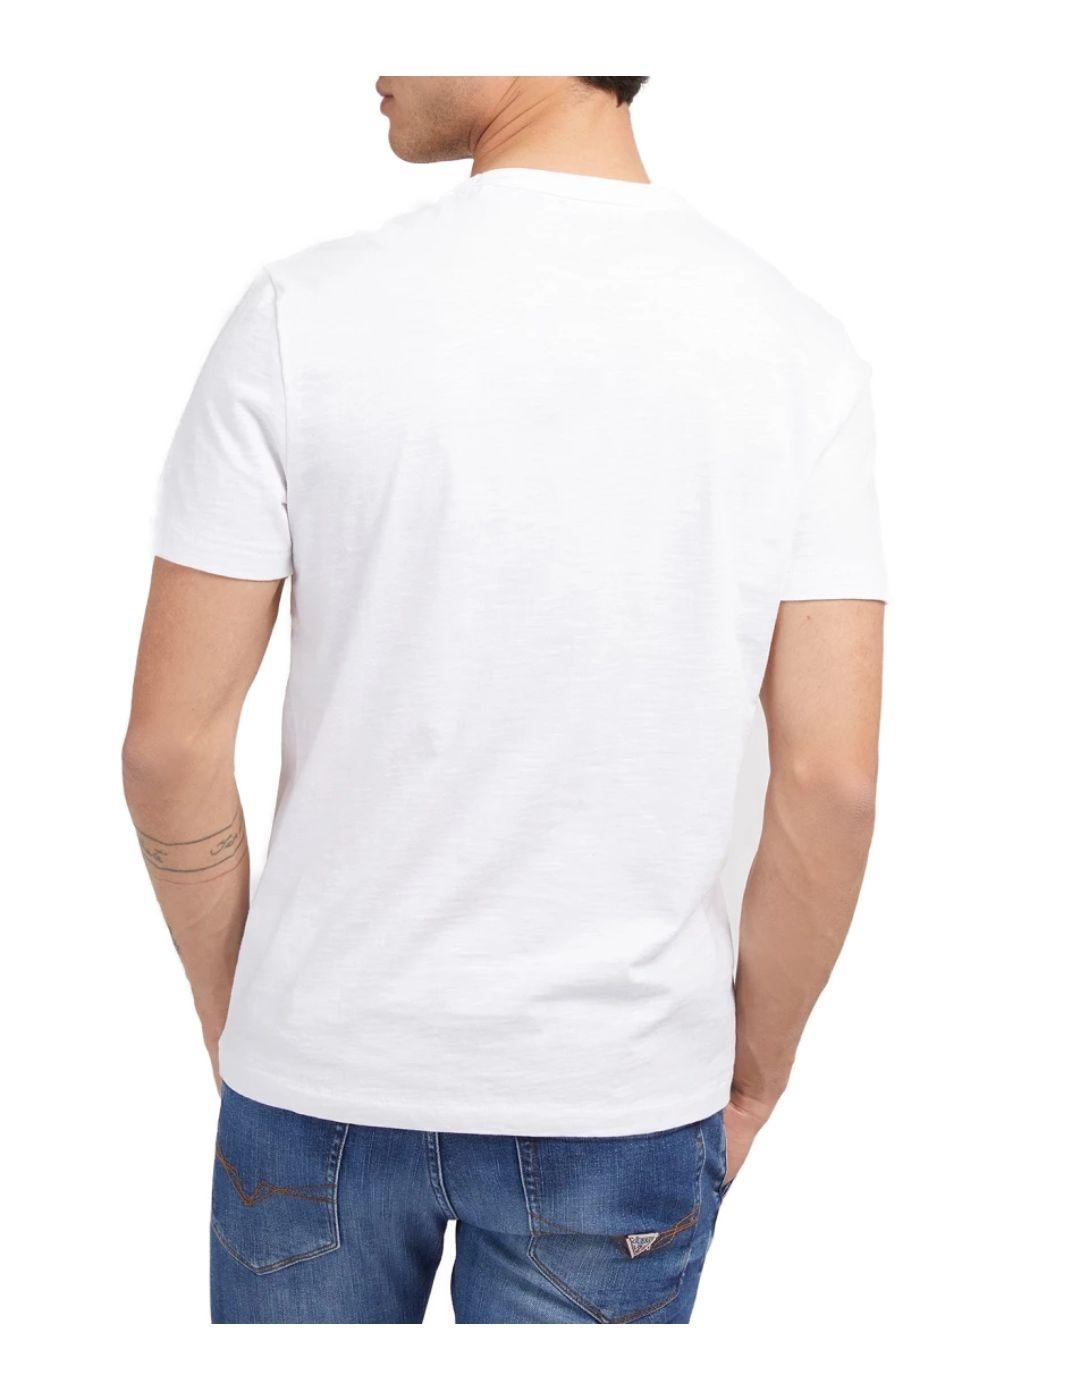 Camiseta Guess Route blanca para hombre-a